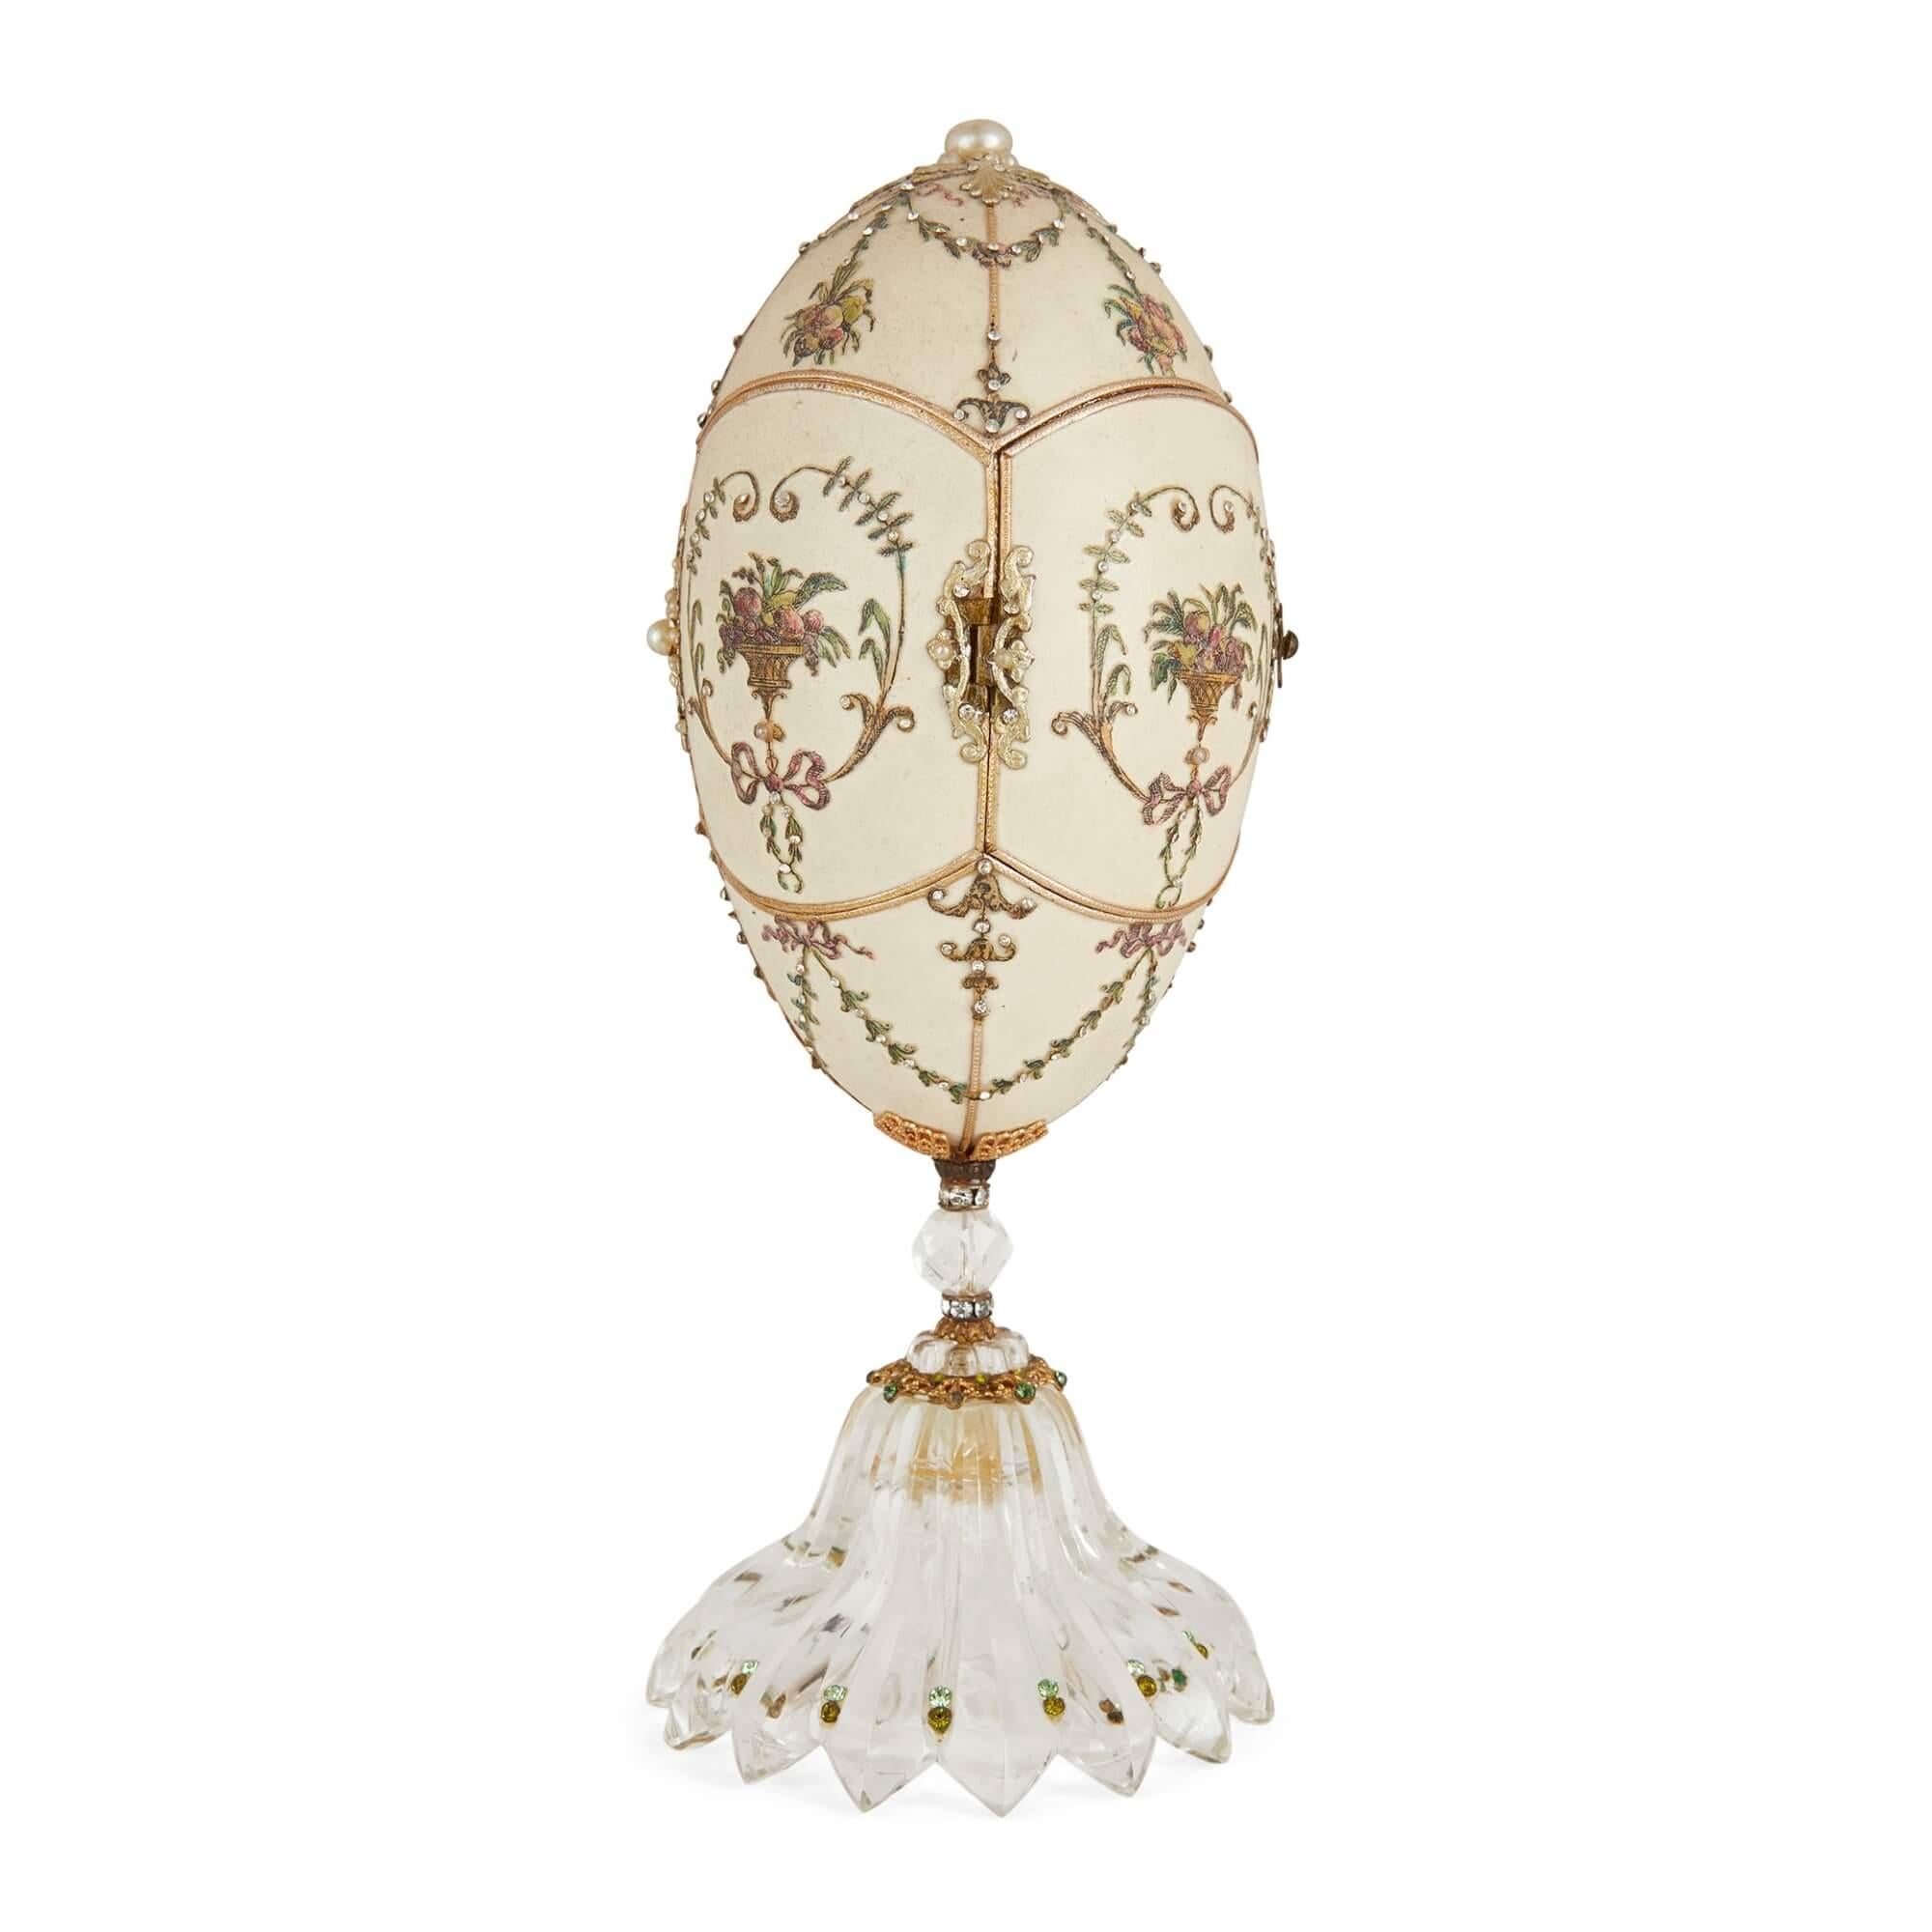 19th Century Antique Semi-Precious Stone and Silver-Gilt Egg Model For Sale